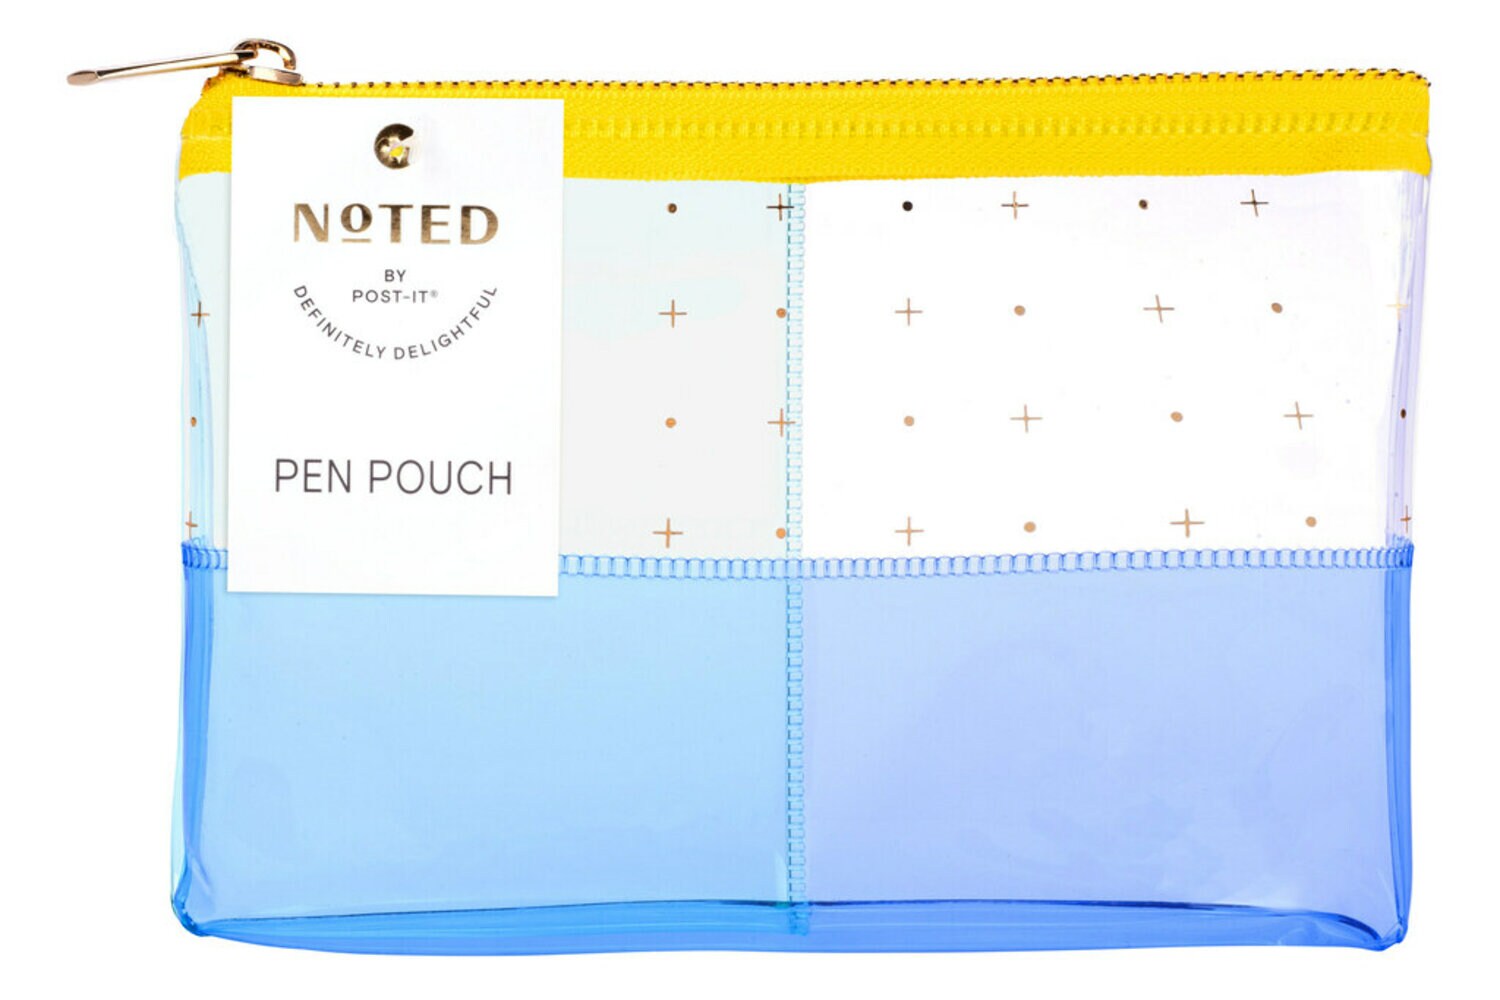 7100264684 - Post-it Pen Pouch NTD5-PP-CLW, One Pen Pouch